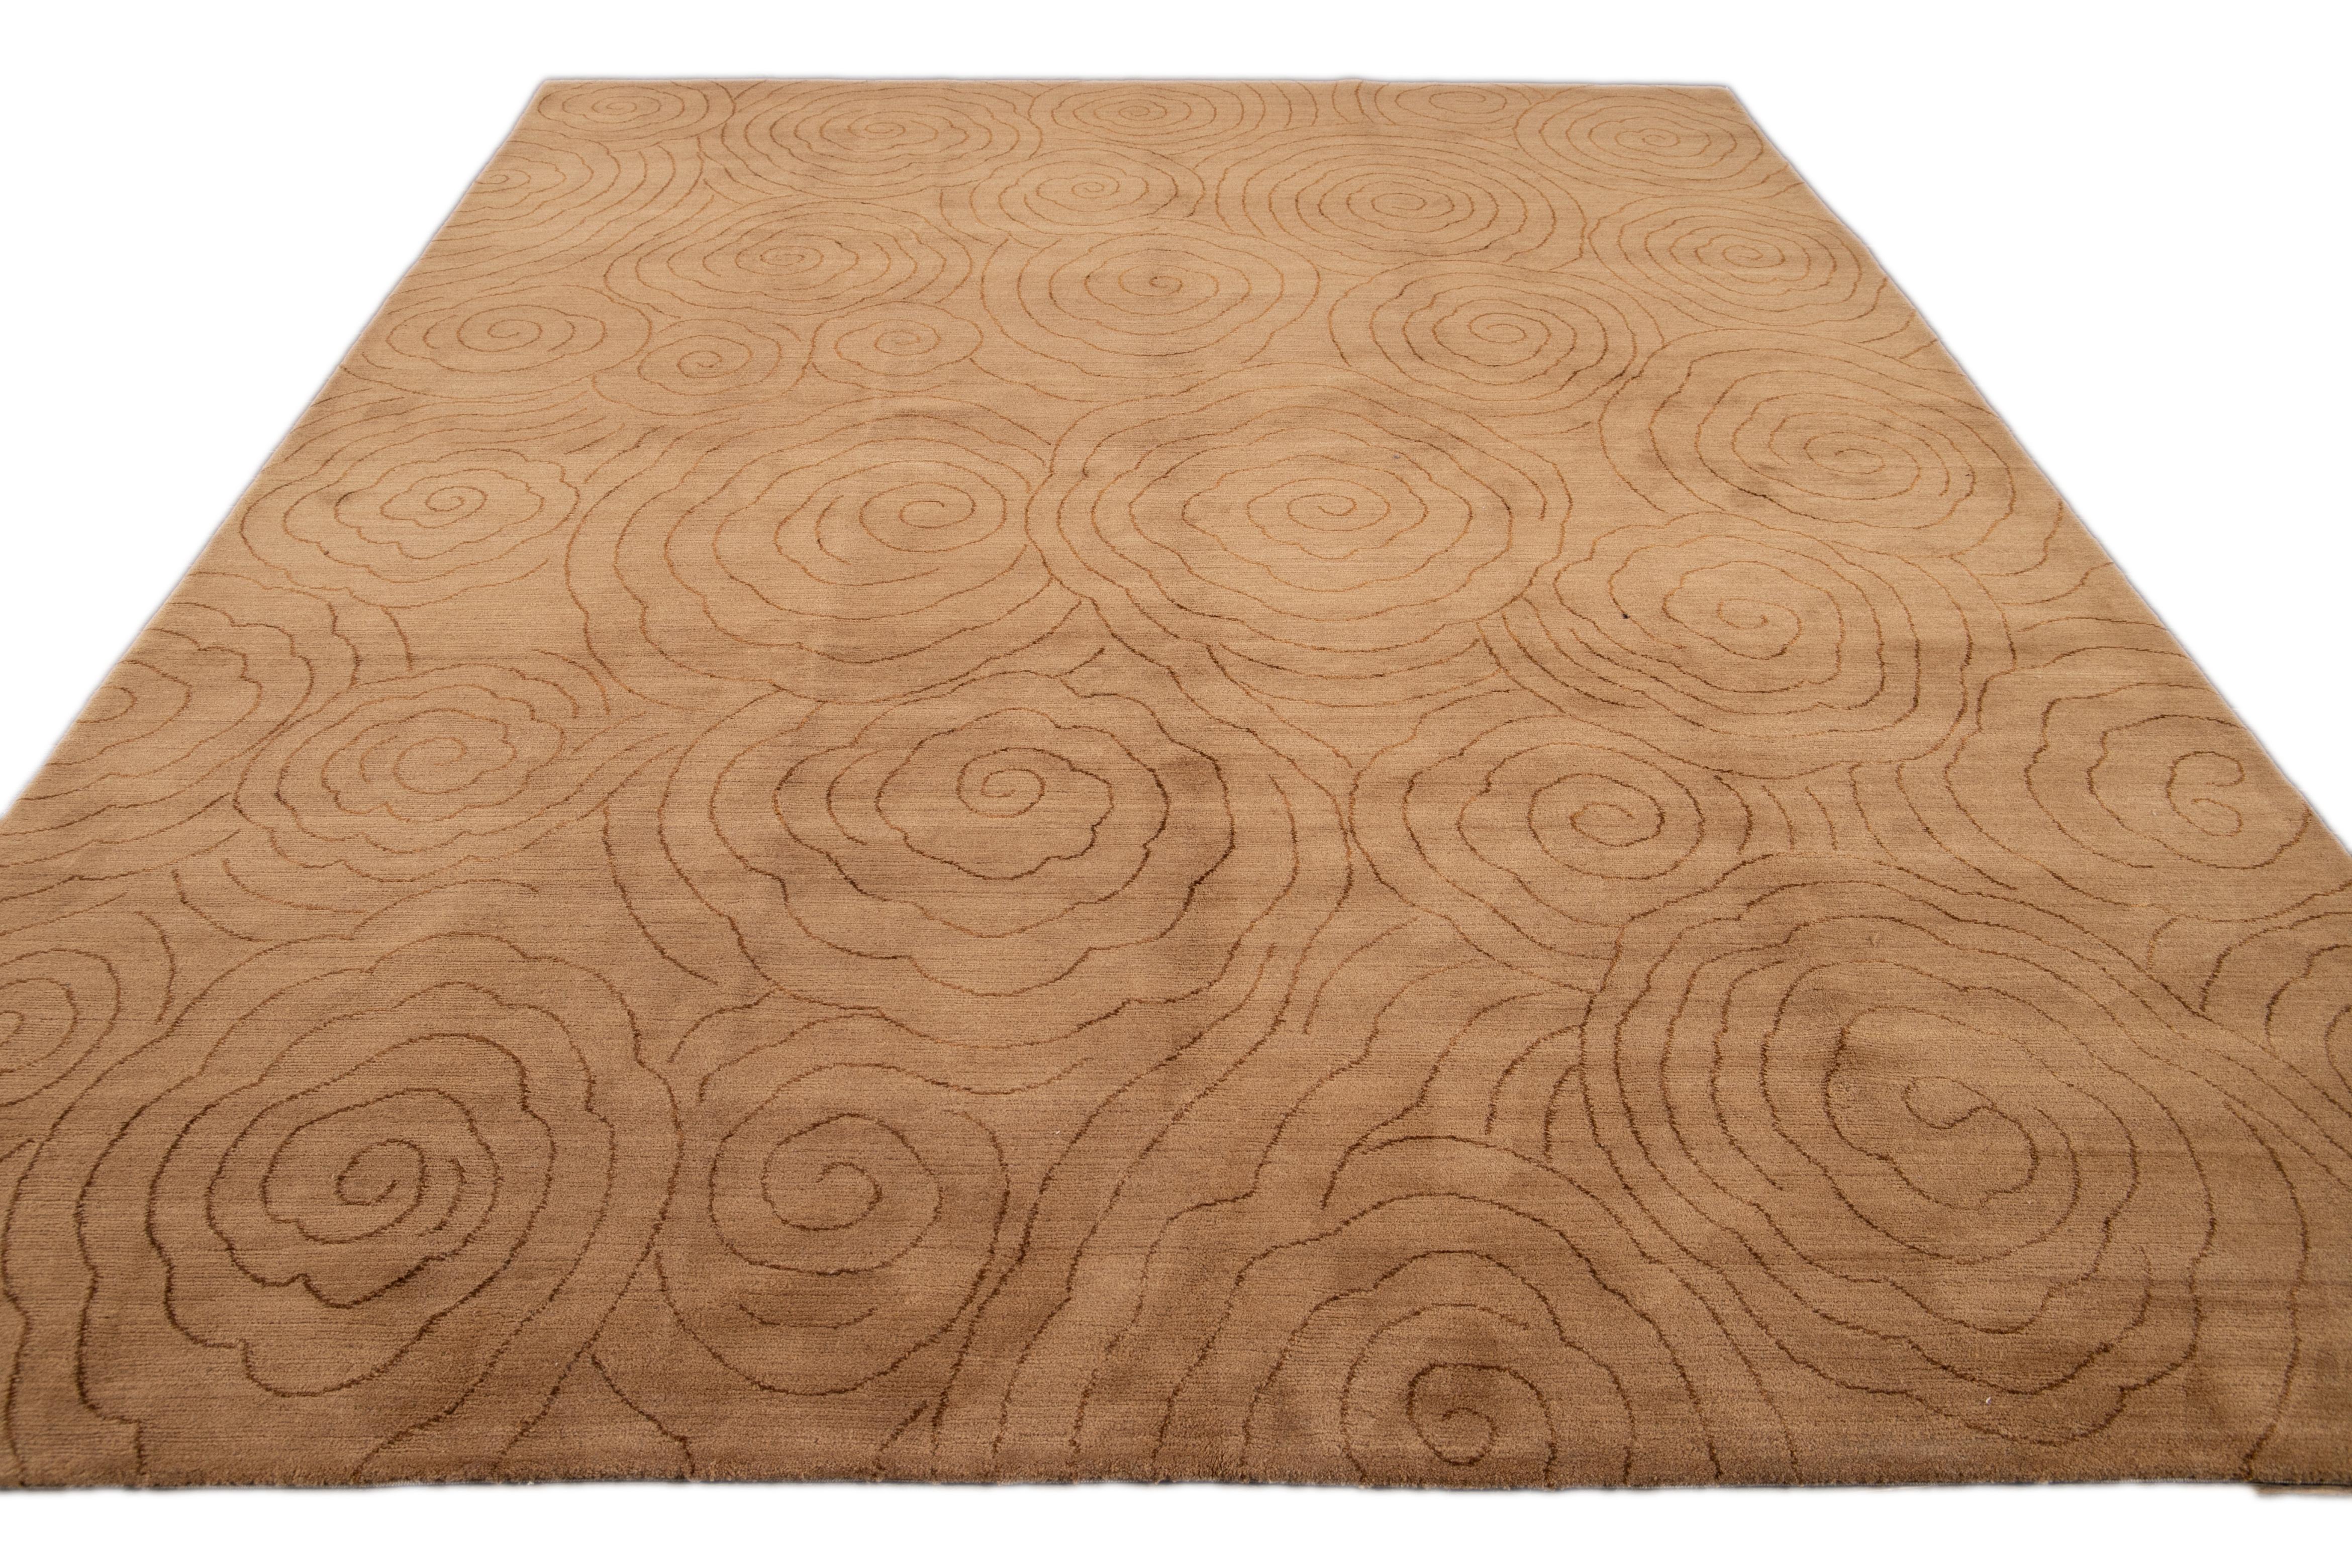 Dieser moderne Tufenkian Teppich zeigt einen neutralen, hellbraunen, abstrakten Hintergrund, der durch braune Akzente wunderbar zur Geltung kommt. Zusammen ergeben diese Elemente ein schickes und anspruchsvolles Gesamtdesign, das die Essenz des